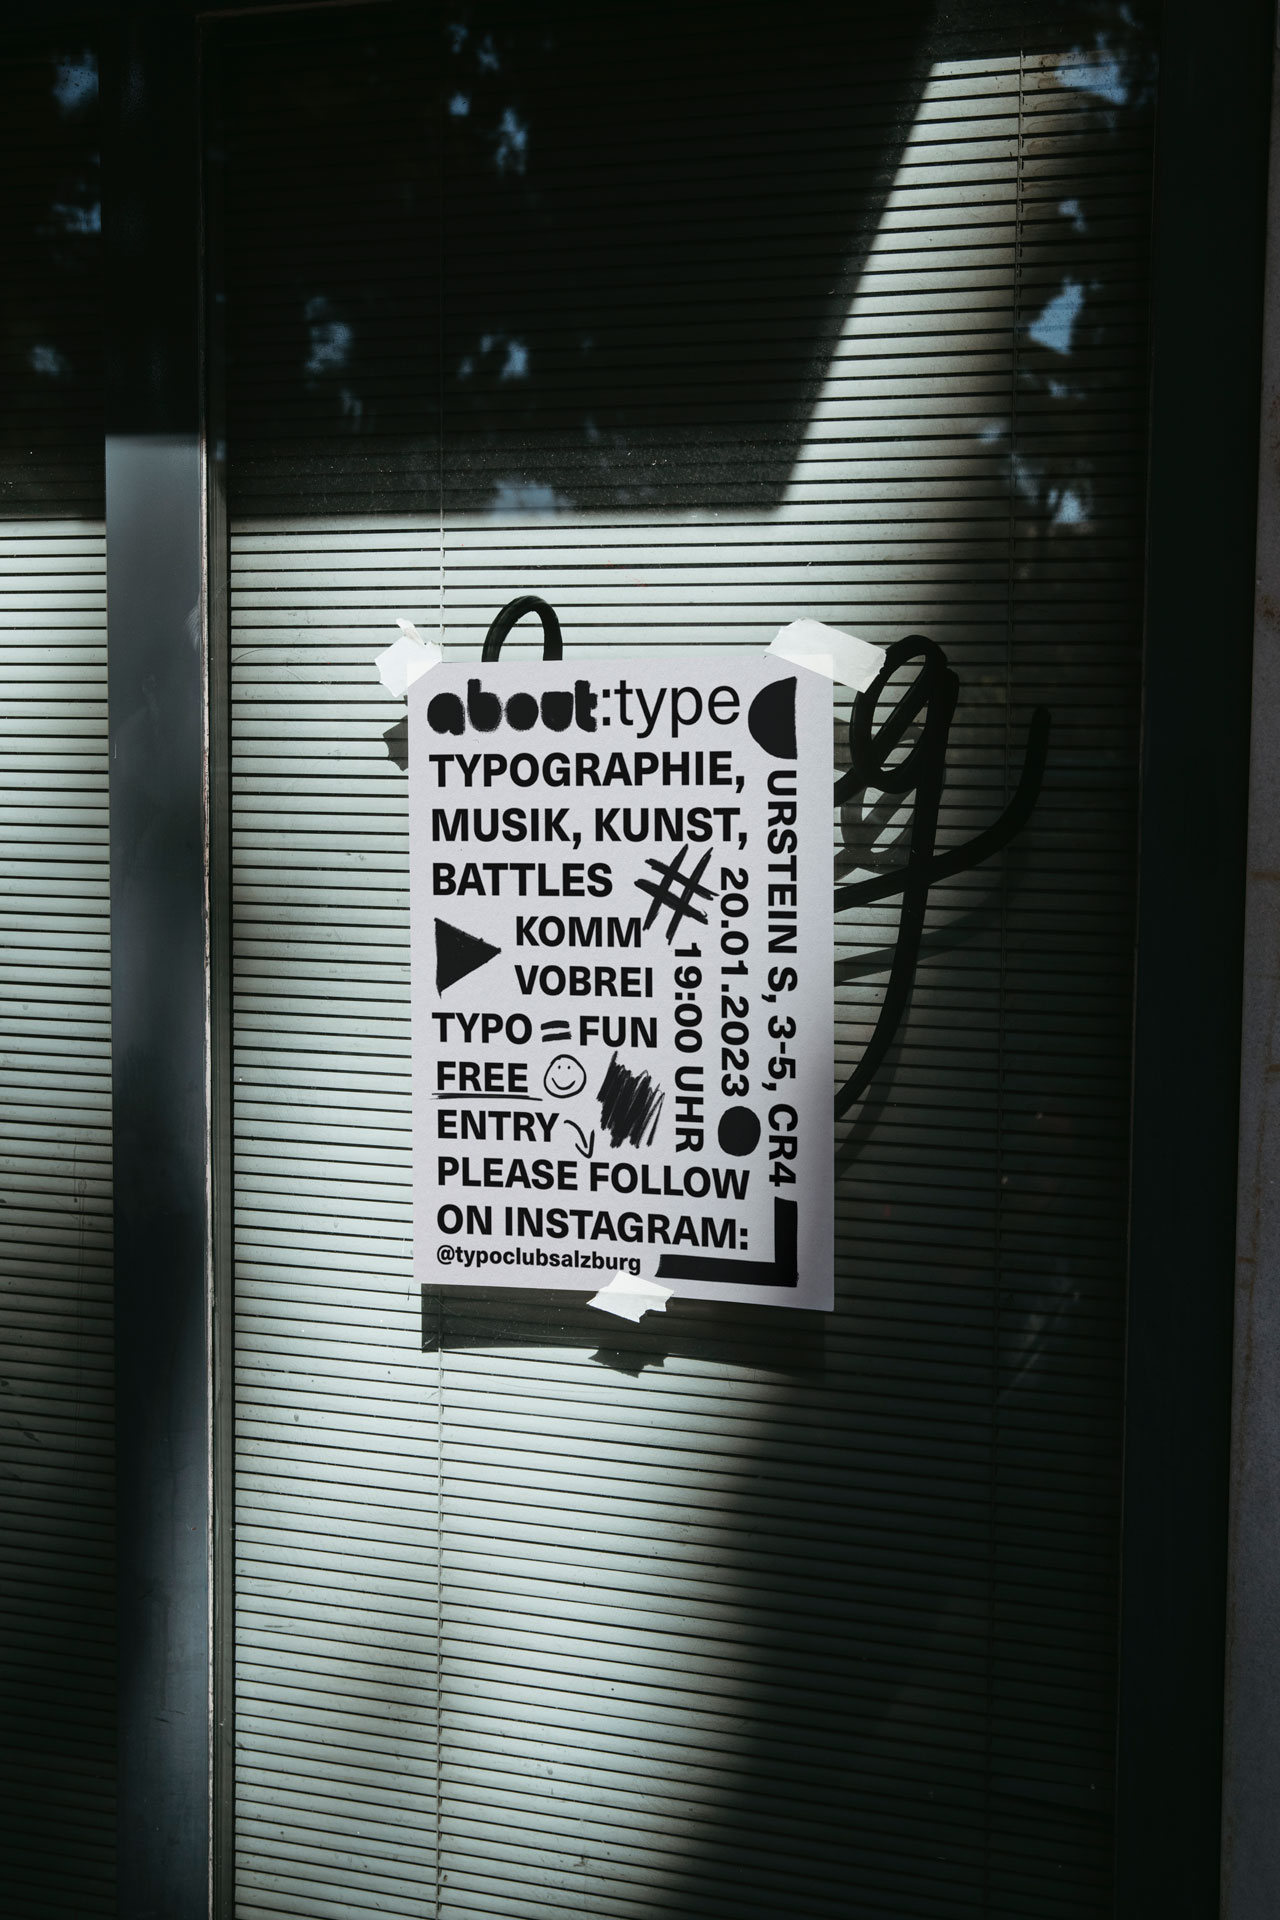 Analog und digital gestaltetes Plakat des Typoclub Salzburg auf einer Glasscheibe mittels Klebestreifen befestigt